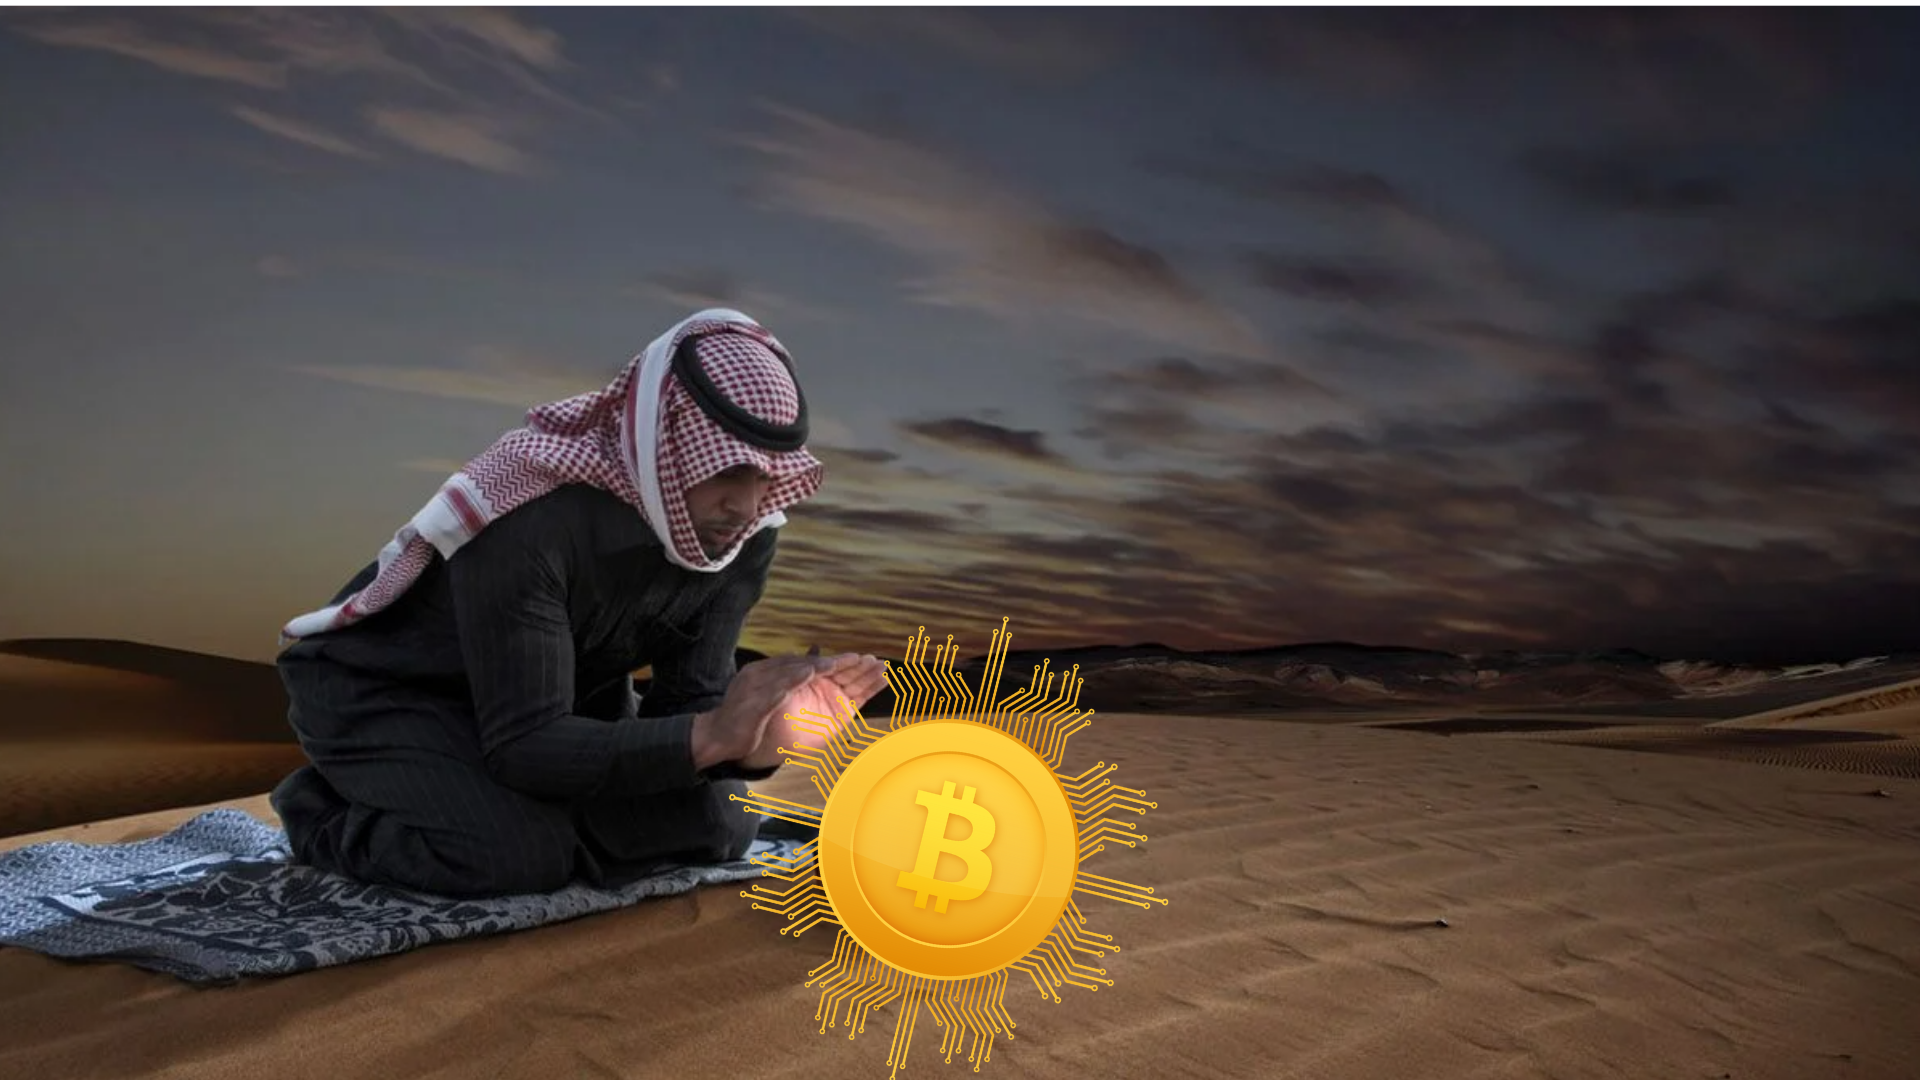  Serbijos princas sako, kad arabų šalys gali priimti Bitcoin anksčiau, nei mes manome